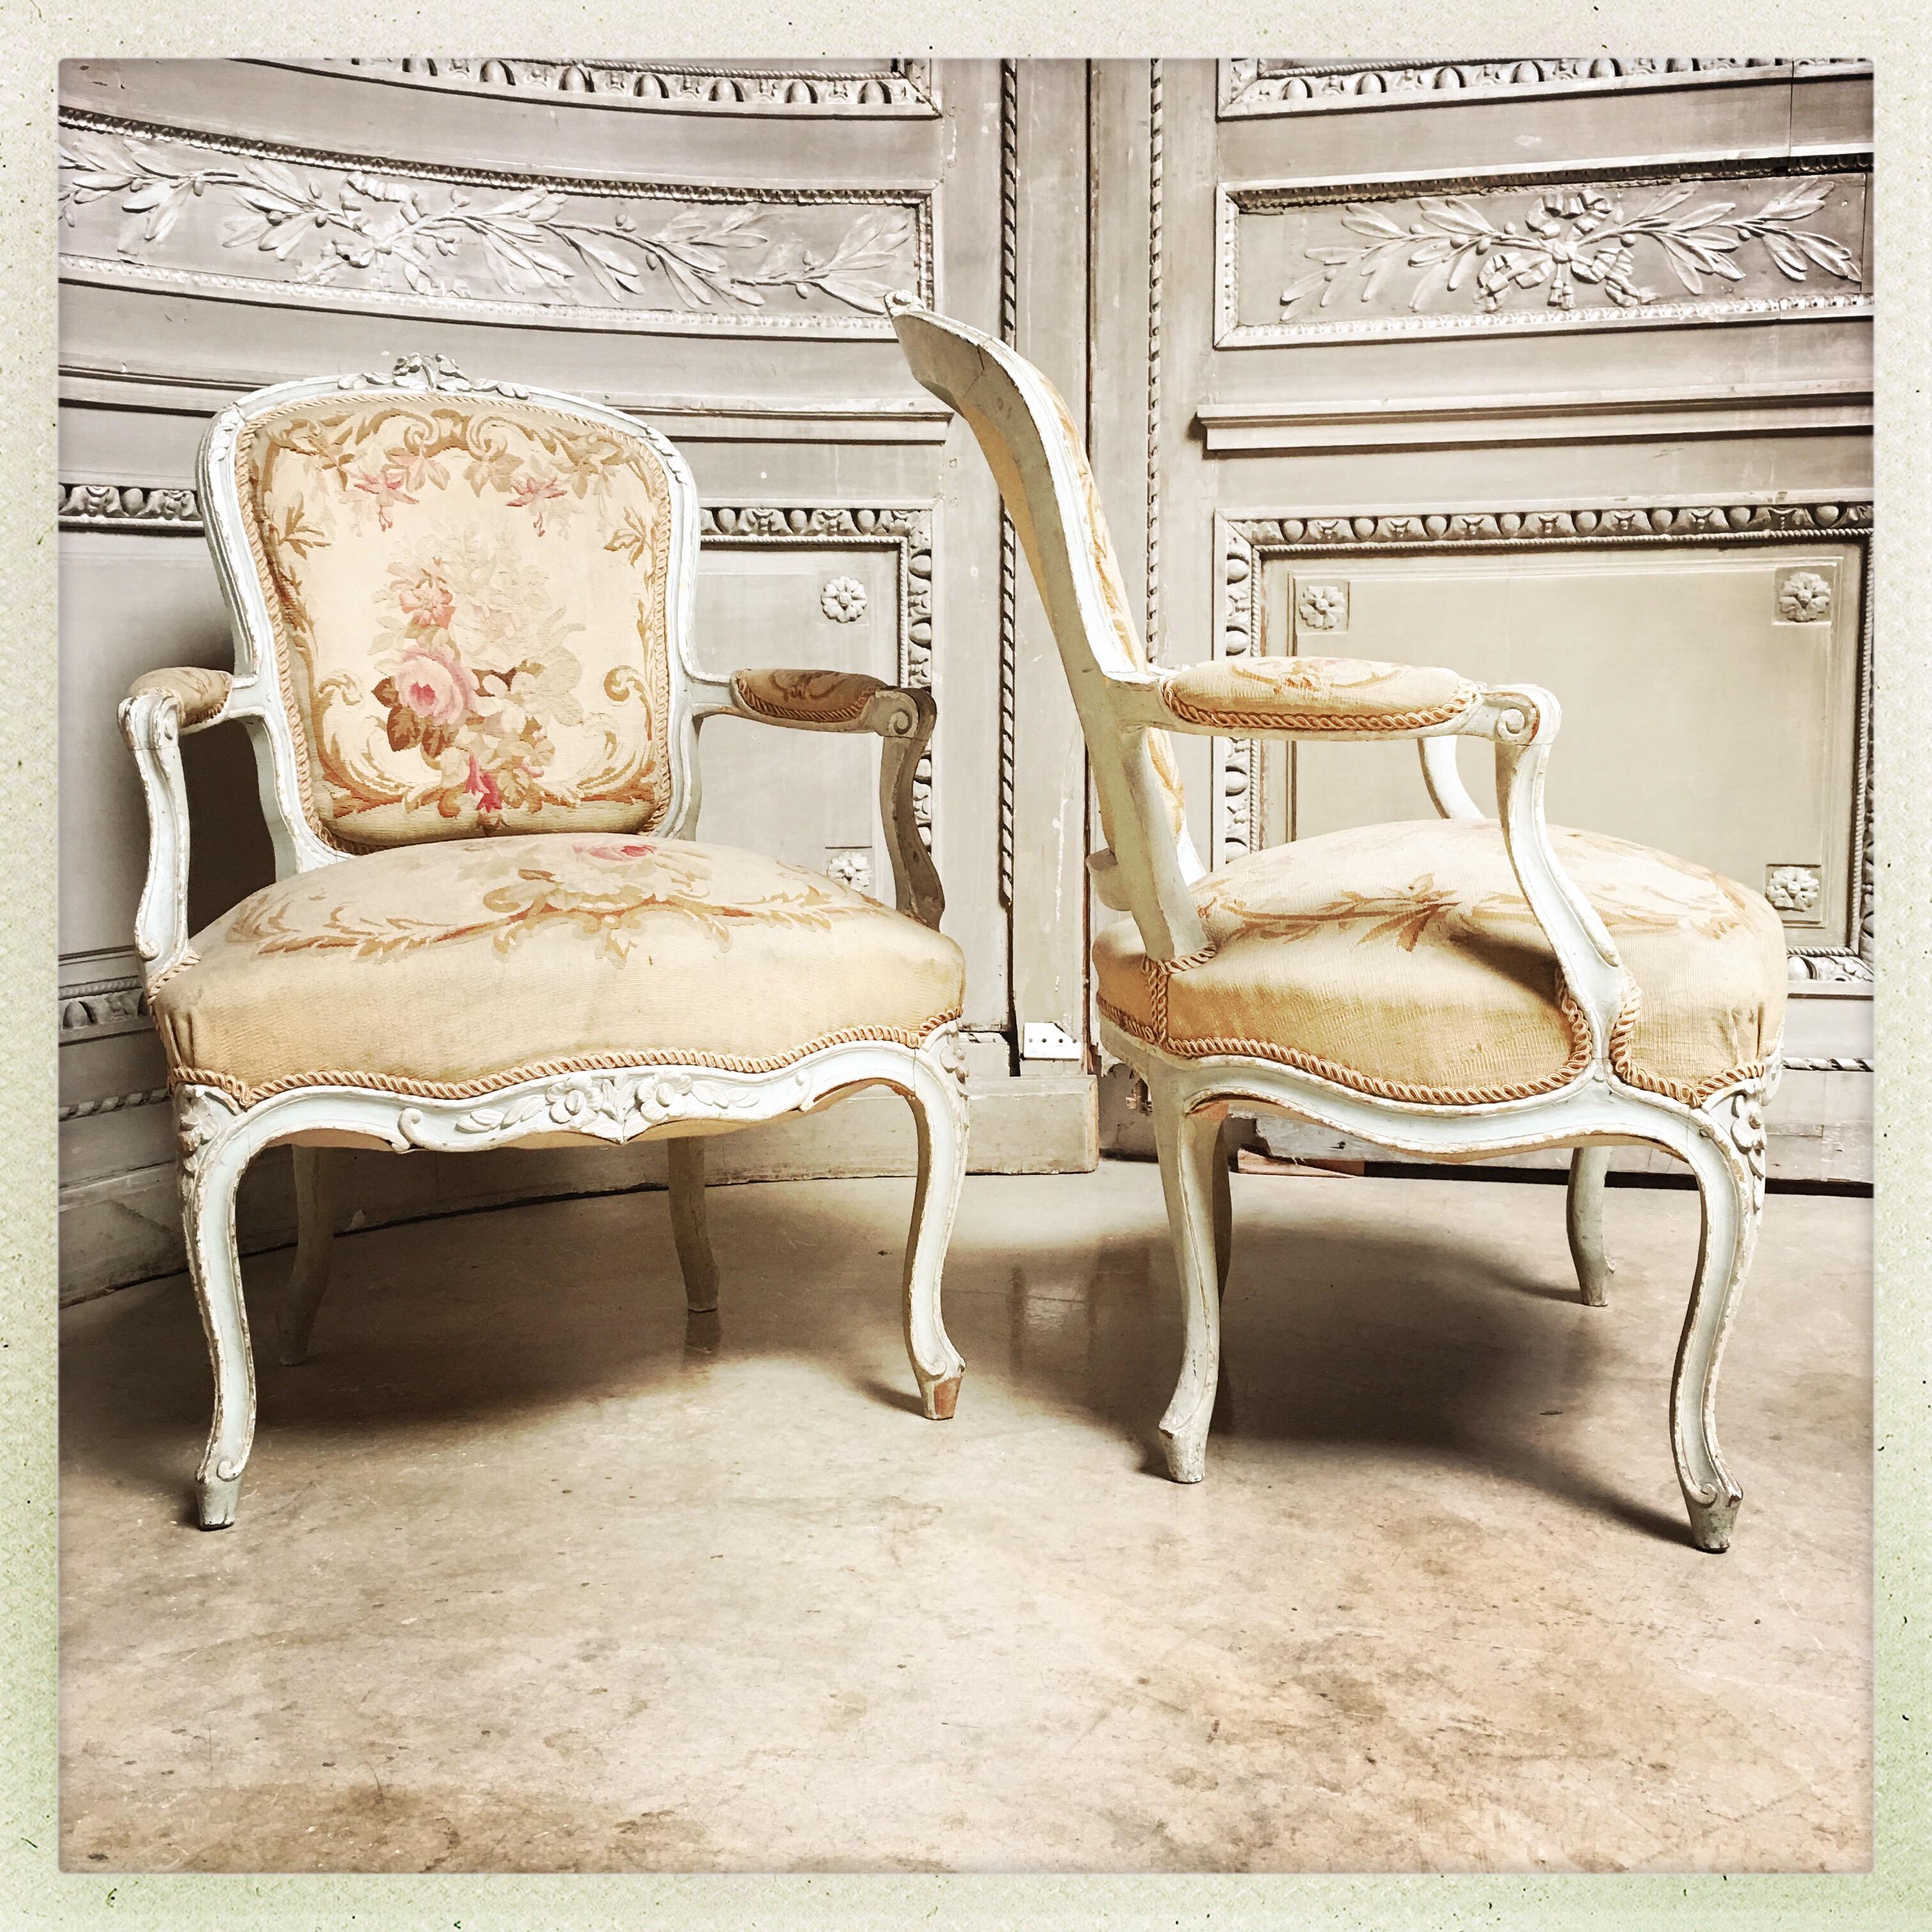 Paire de fauteuils de style Louis XV avec une belle finition peinte ancienne et une tapisserie d'Aubusson.